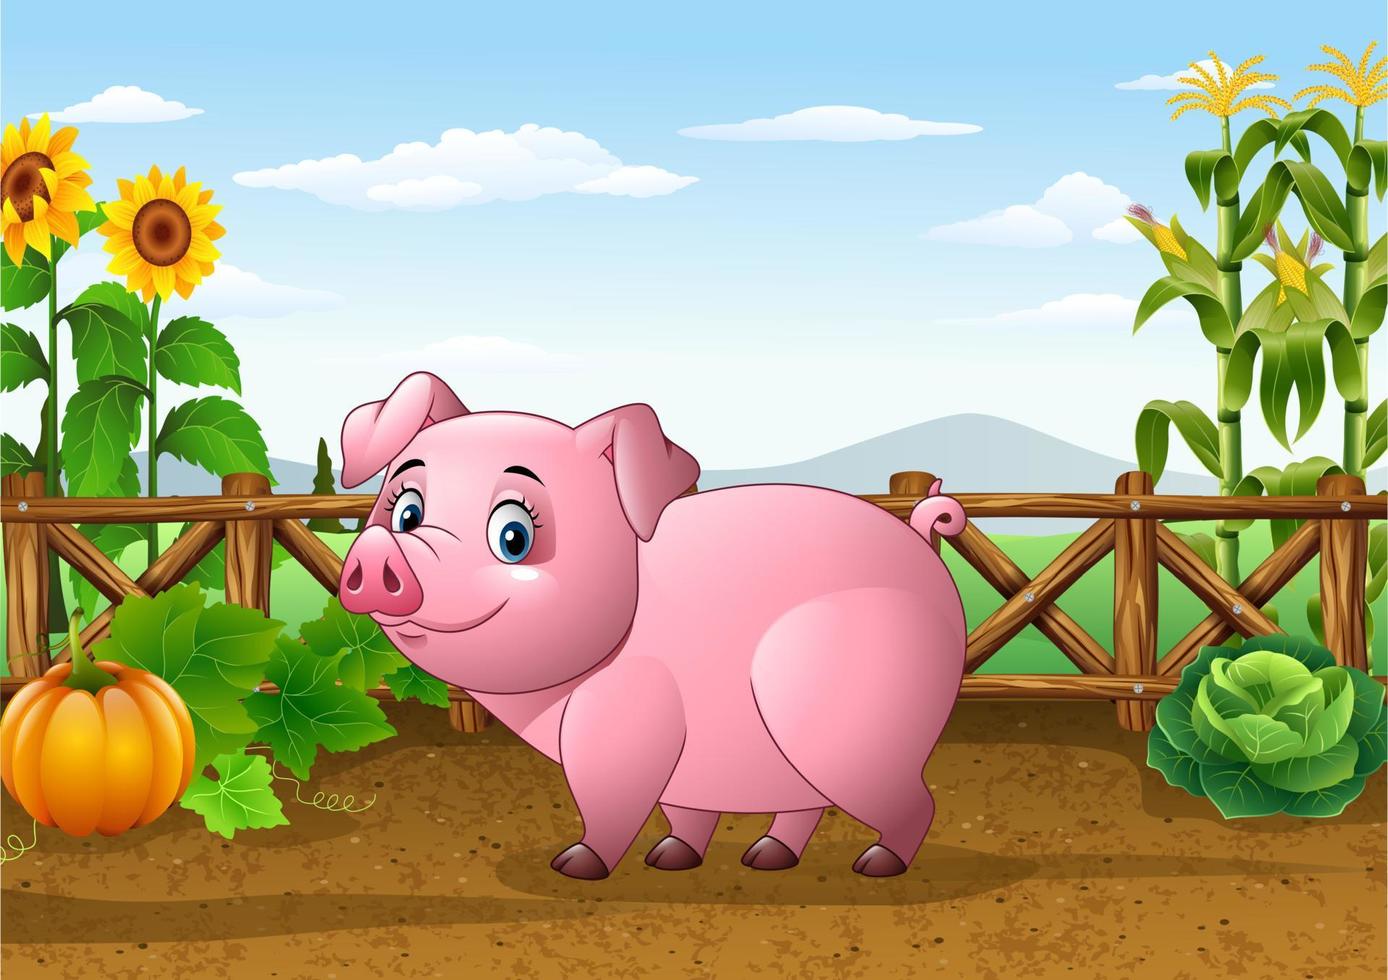 Cartoon pig with farm background vector